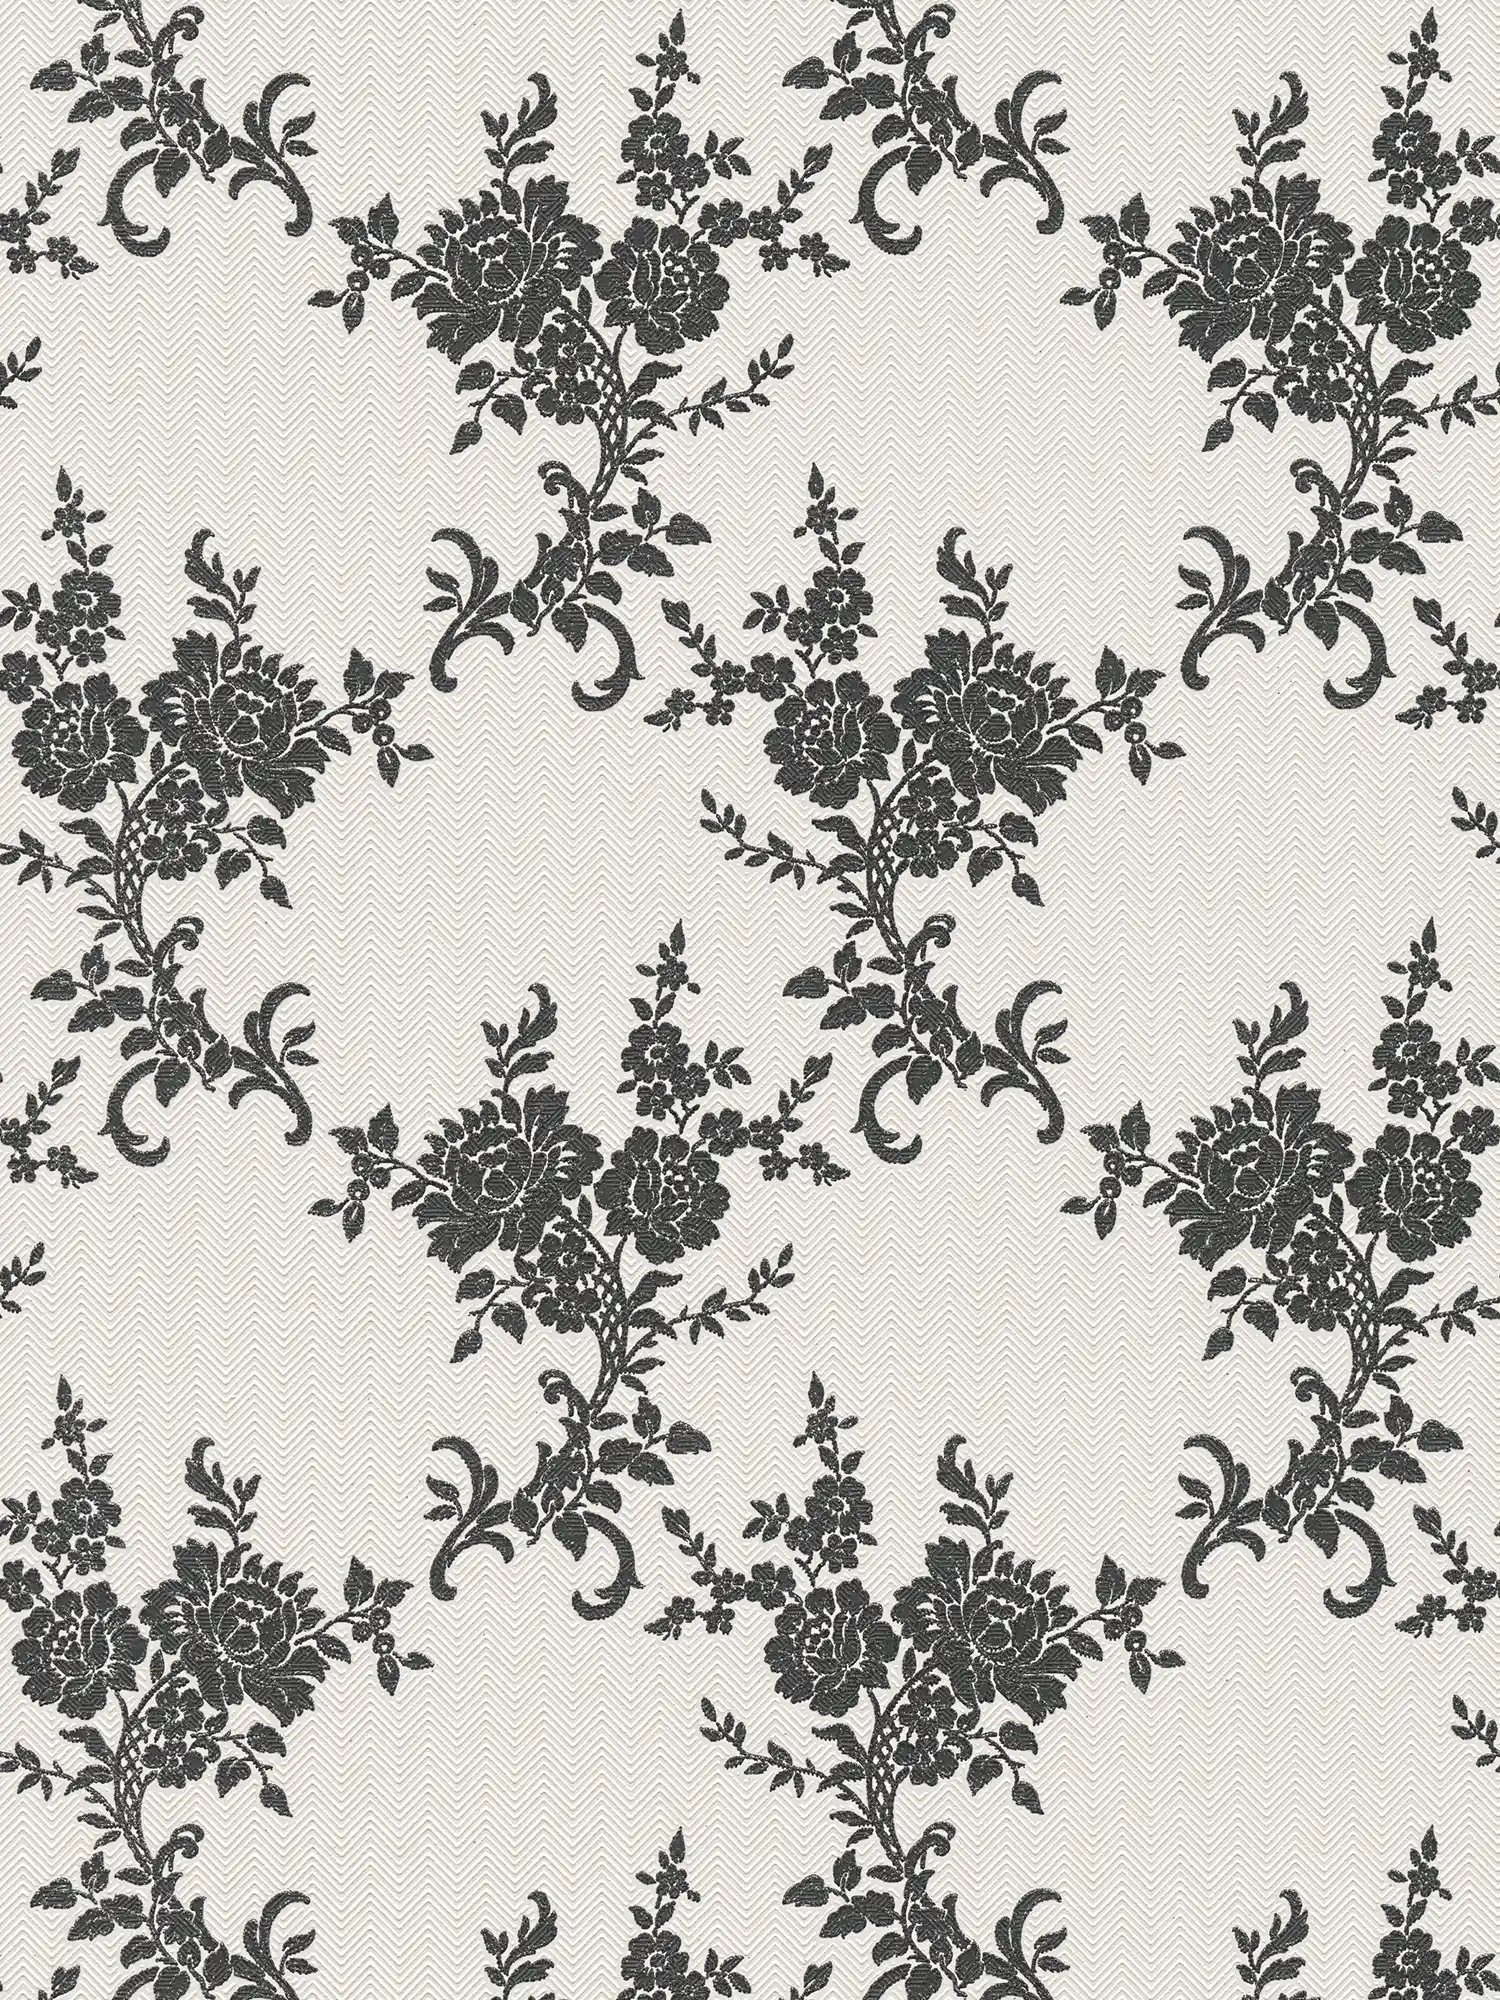 Papierbehang bloemornamenten & chevron patroon - zwart, wit, zilver
